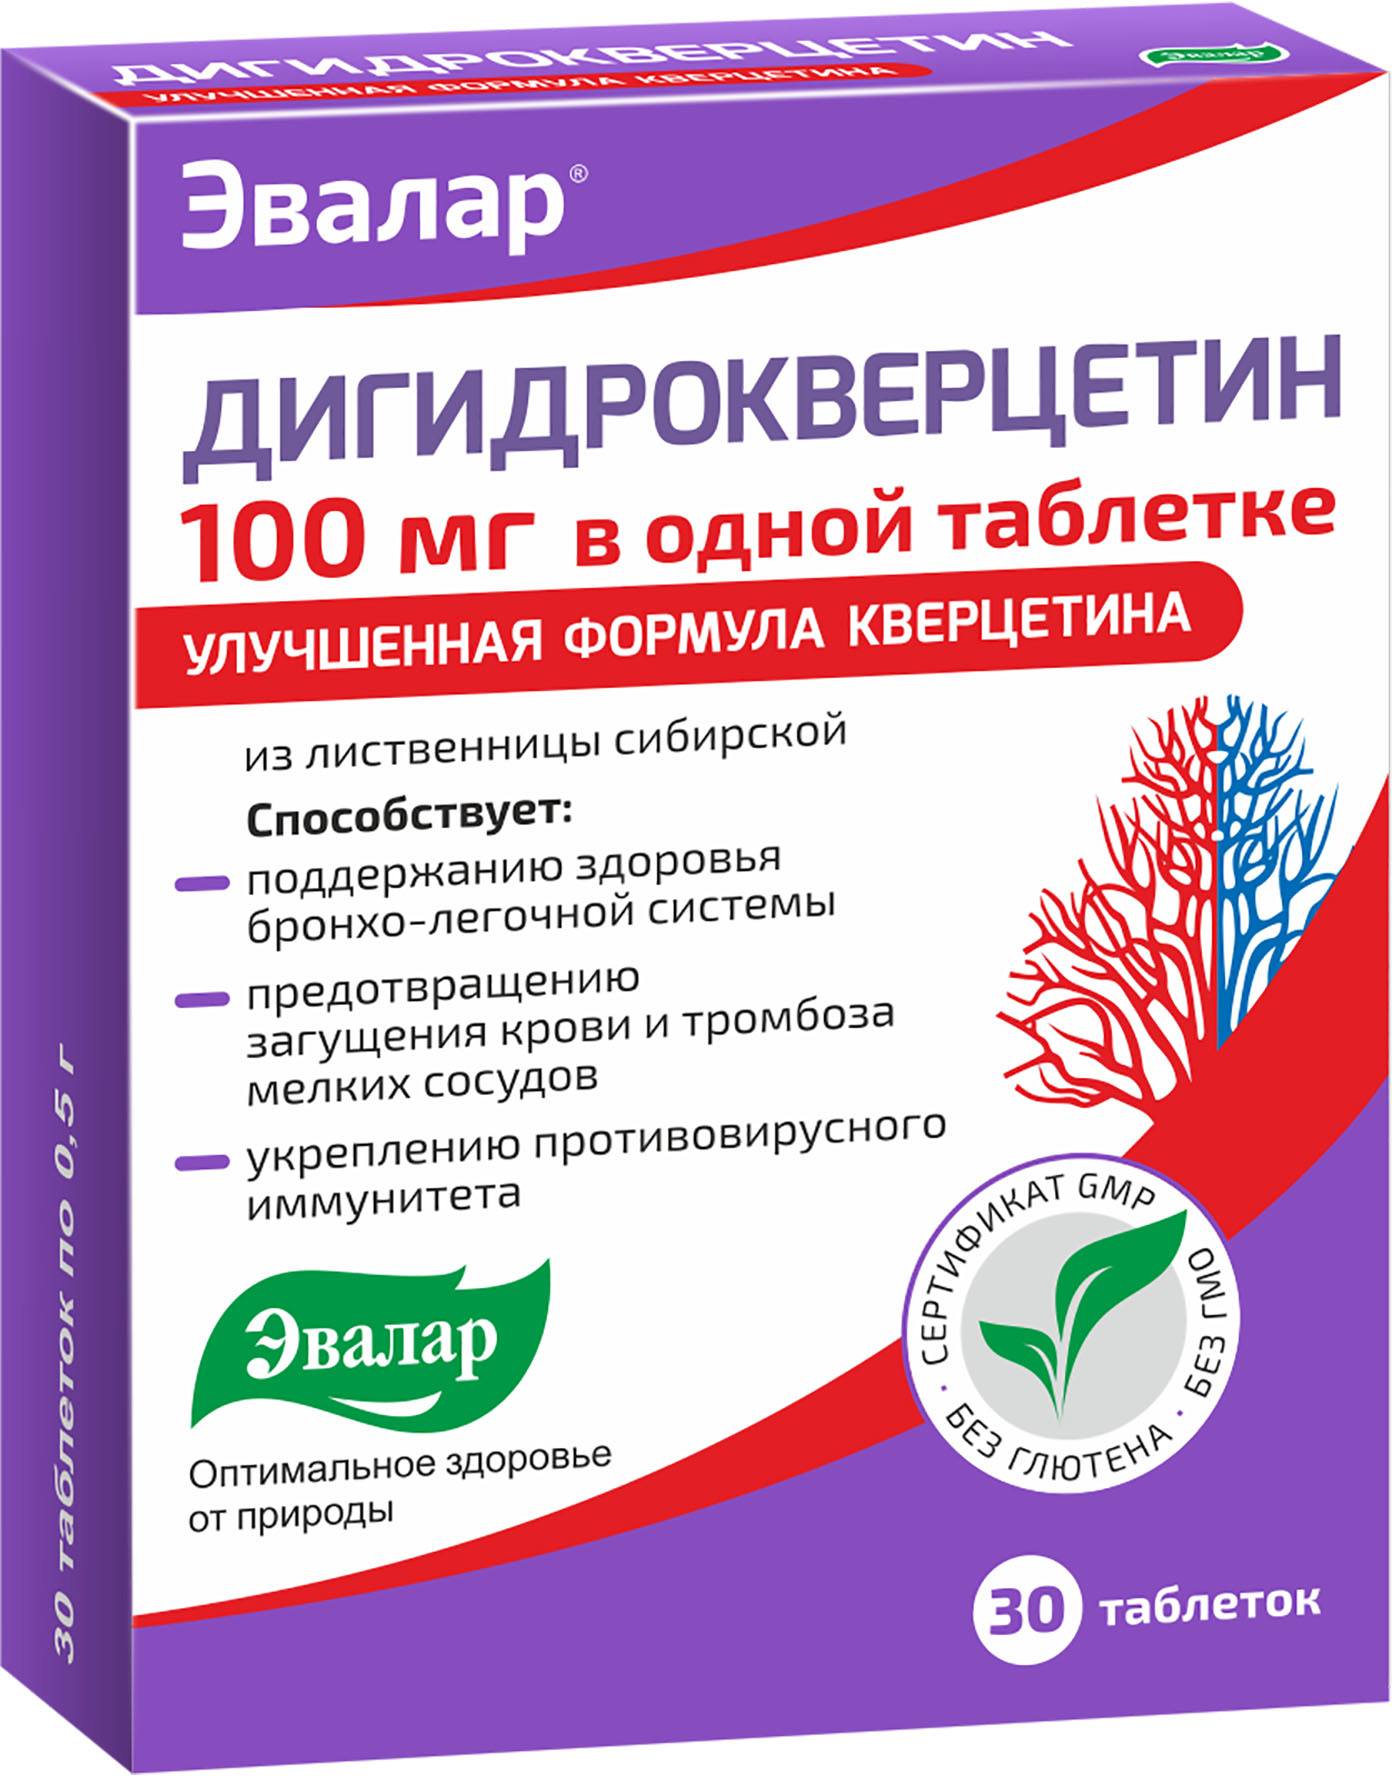 Дигидрокверцетин 100 мг, таблетки 0.5 г, 30 шт. дигидрокверцетин таблетки 25 мг 60 шт